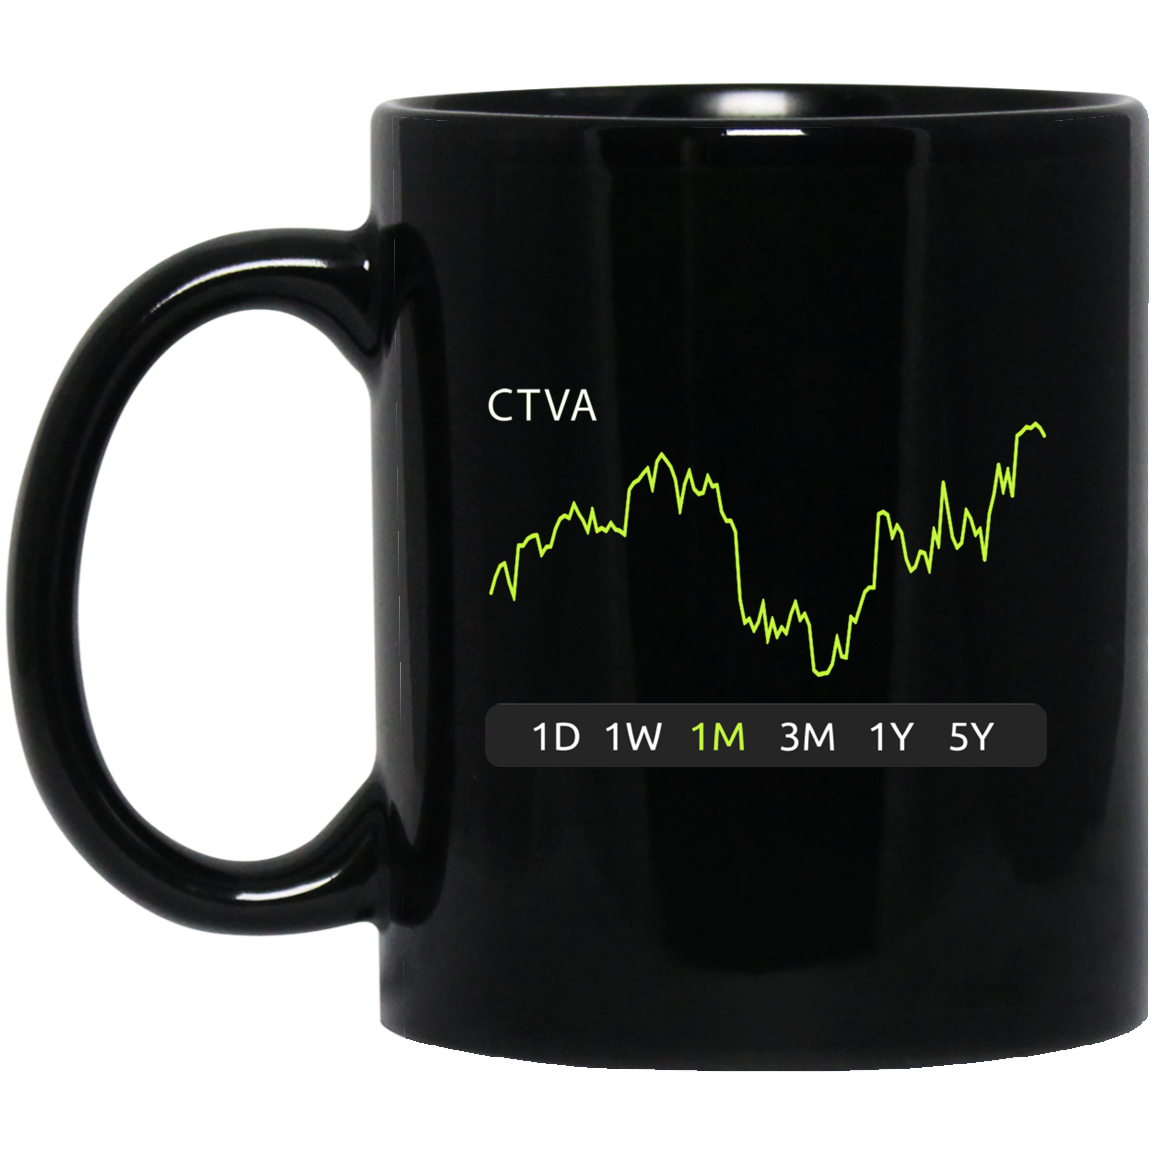 CTVA Stock 1m Mug